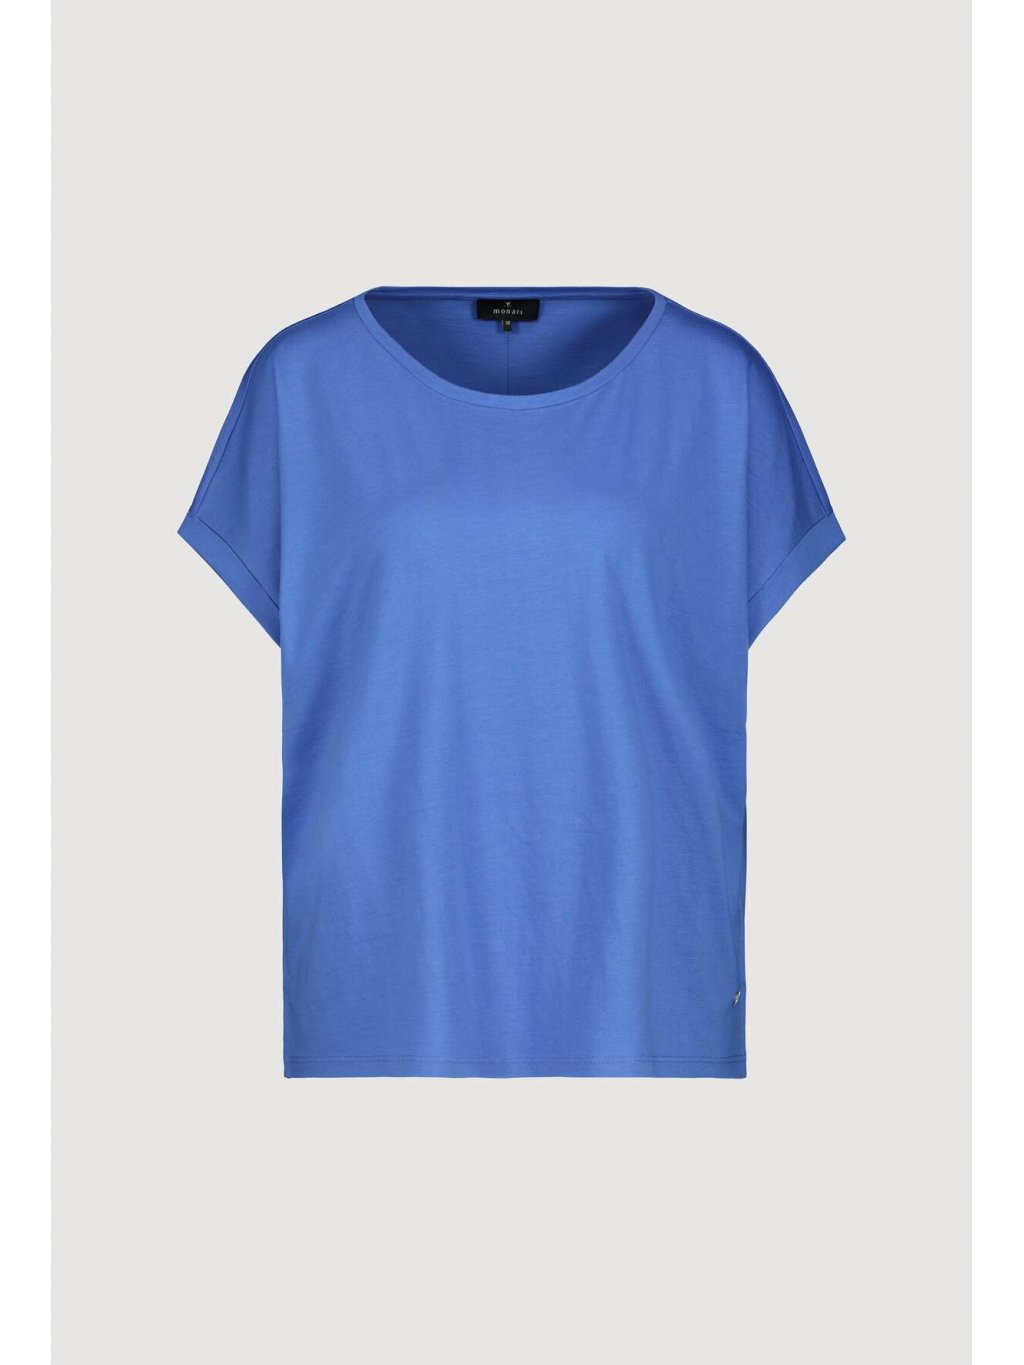 Tričko Monari 7356 středně modré basic